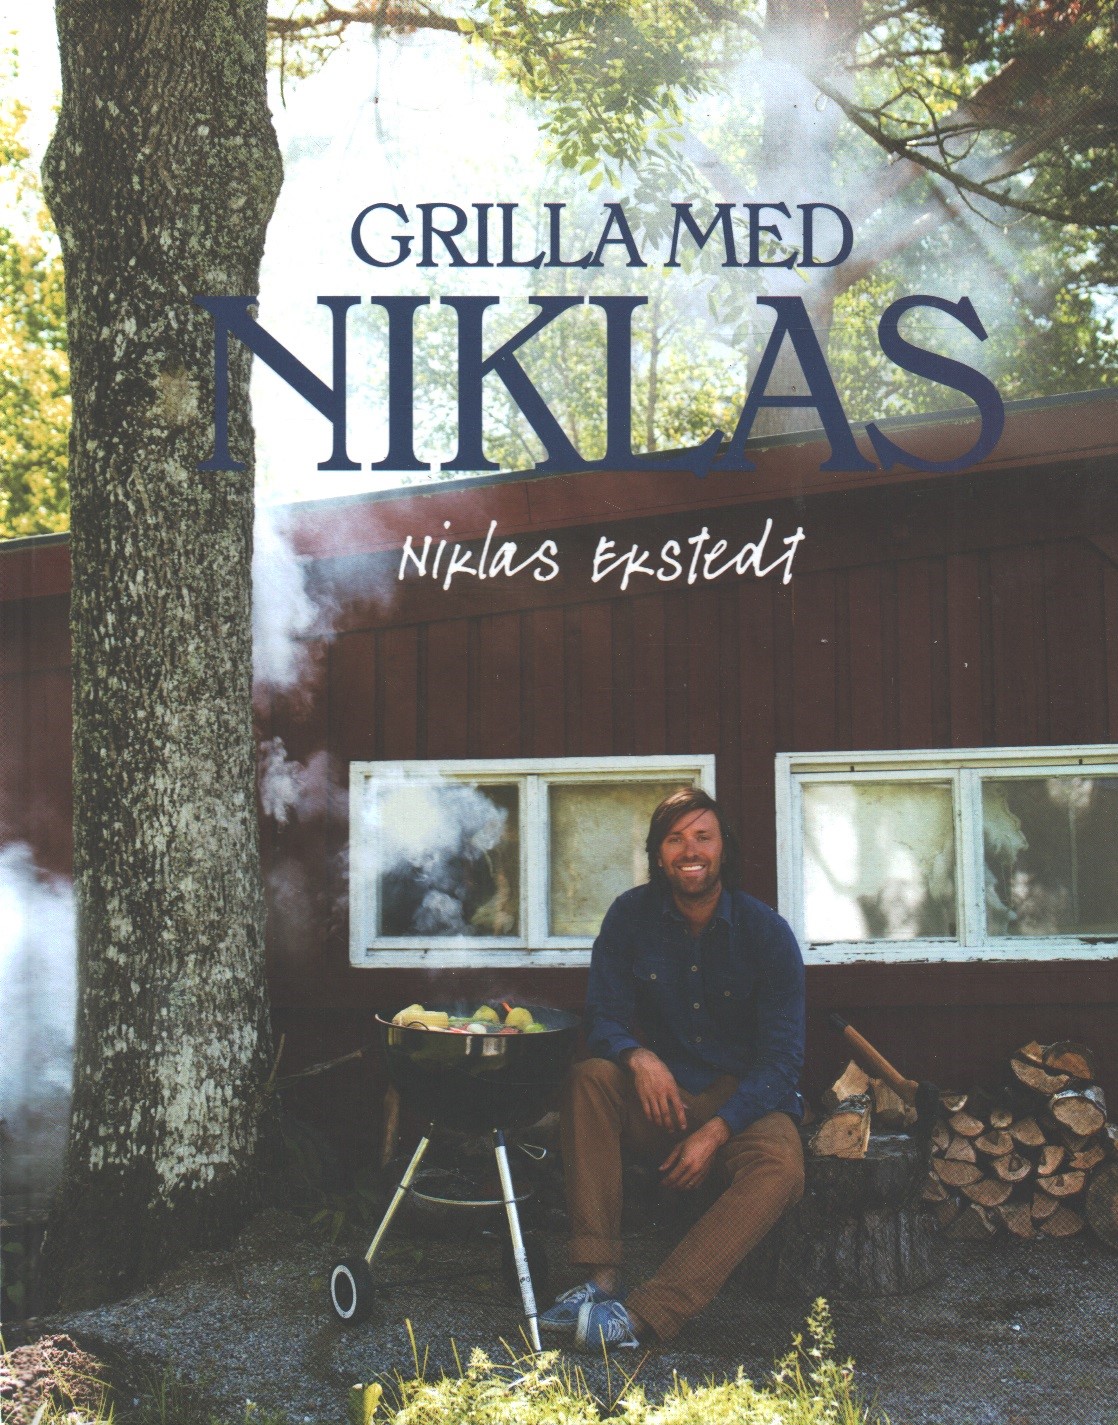 Grilla med Niklas - (återbruk)